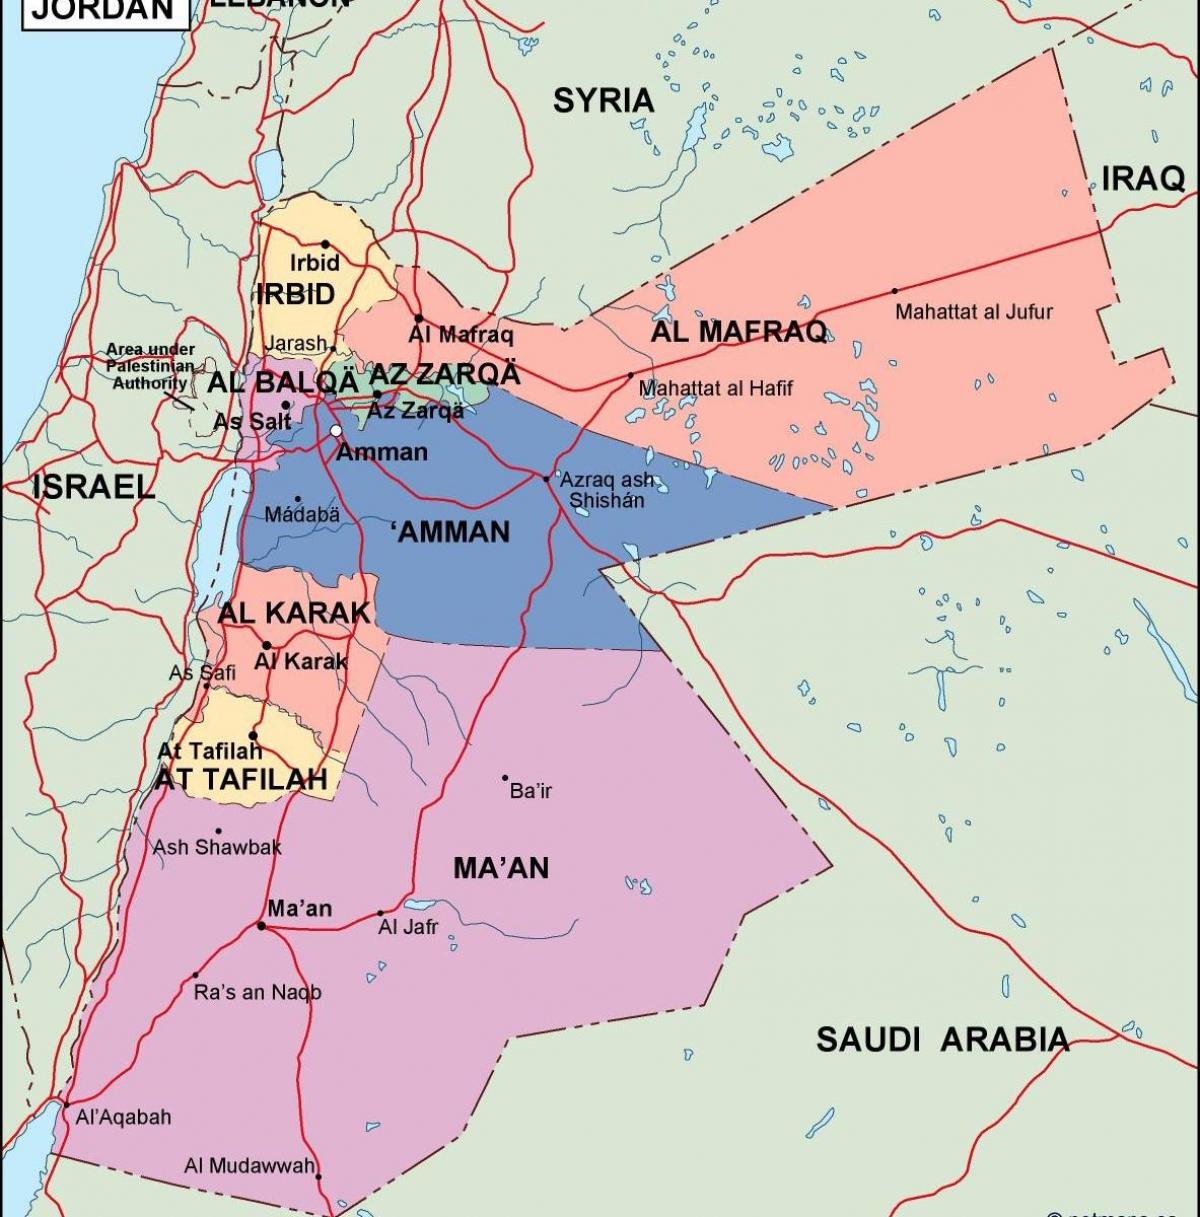 térkép Jordan politikai